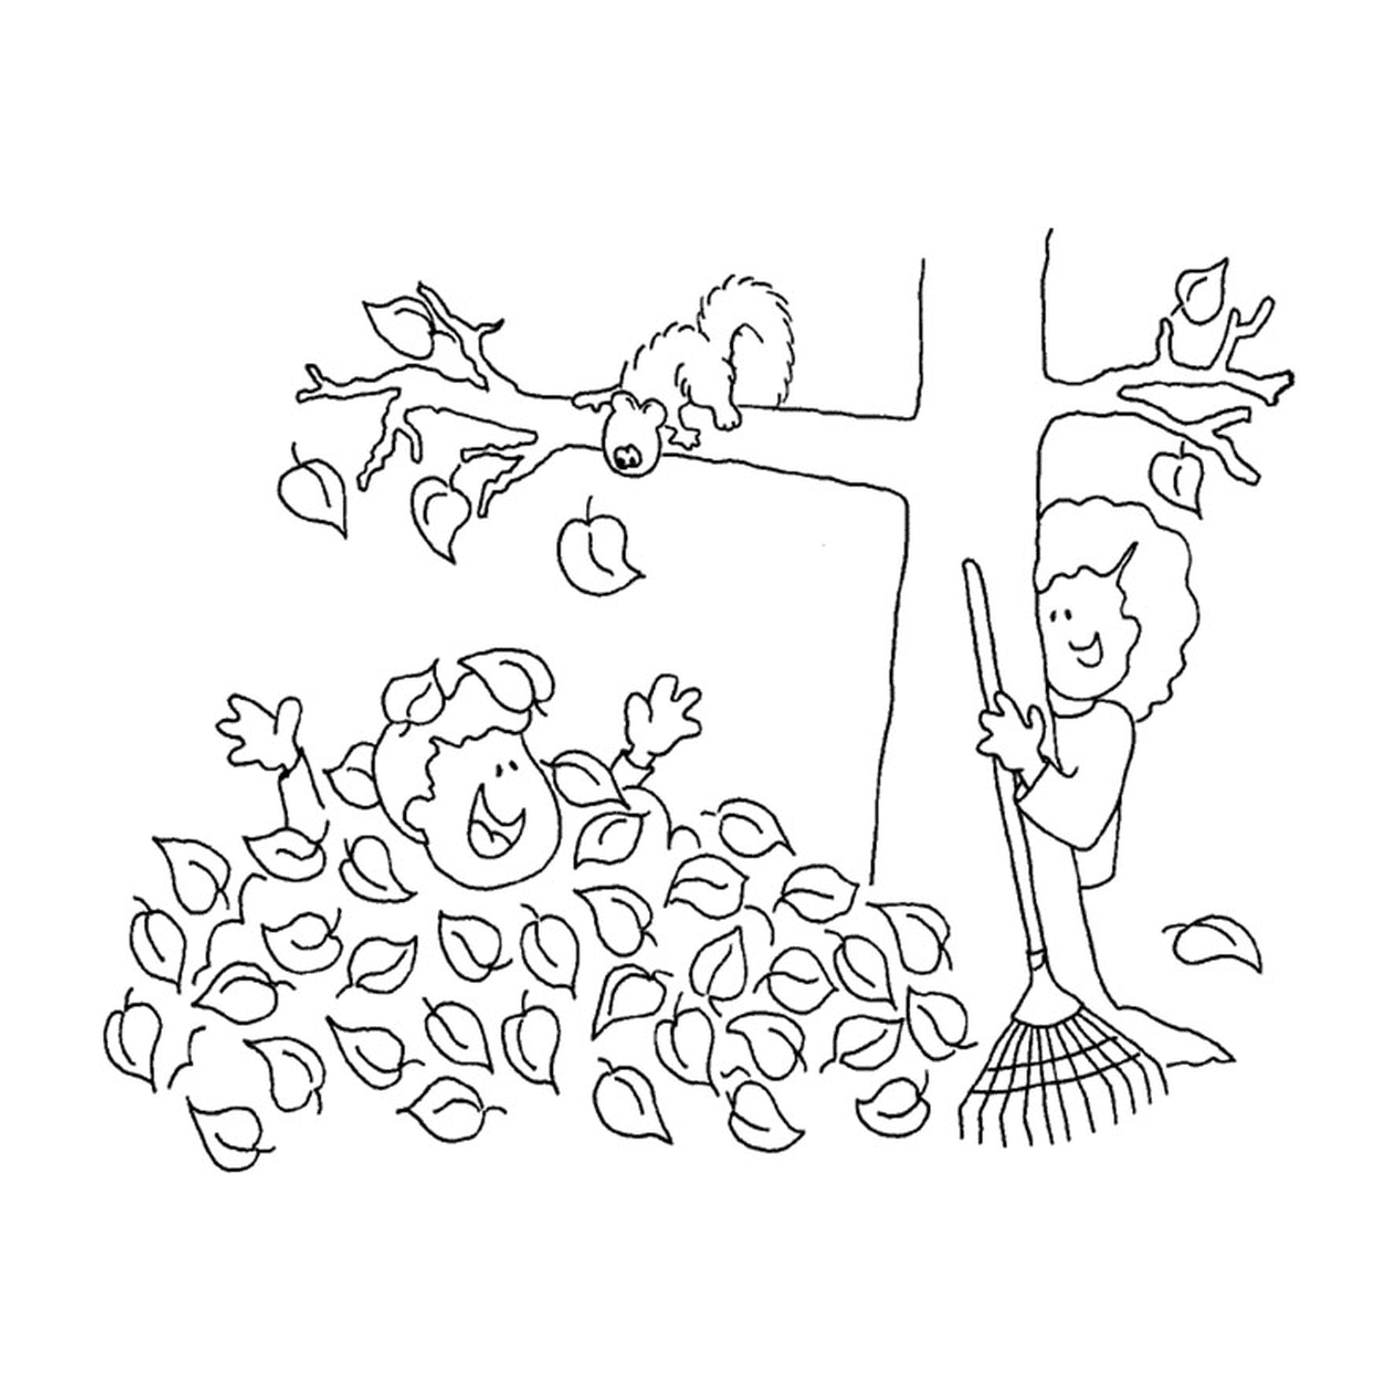  一个男孩和一只松鼠 在死叶子上玩耍 